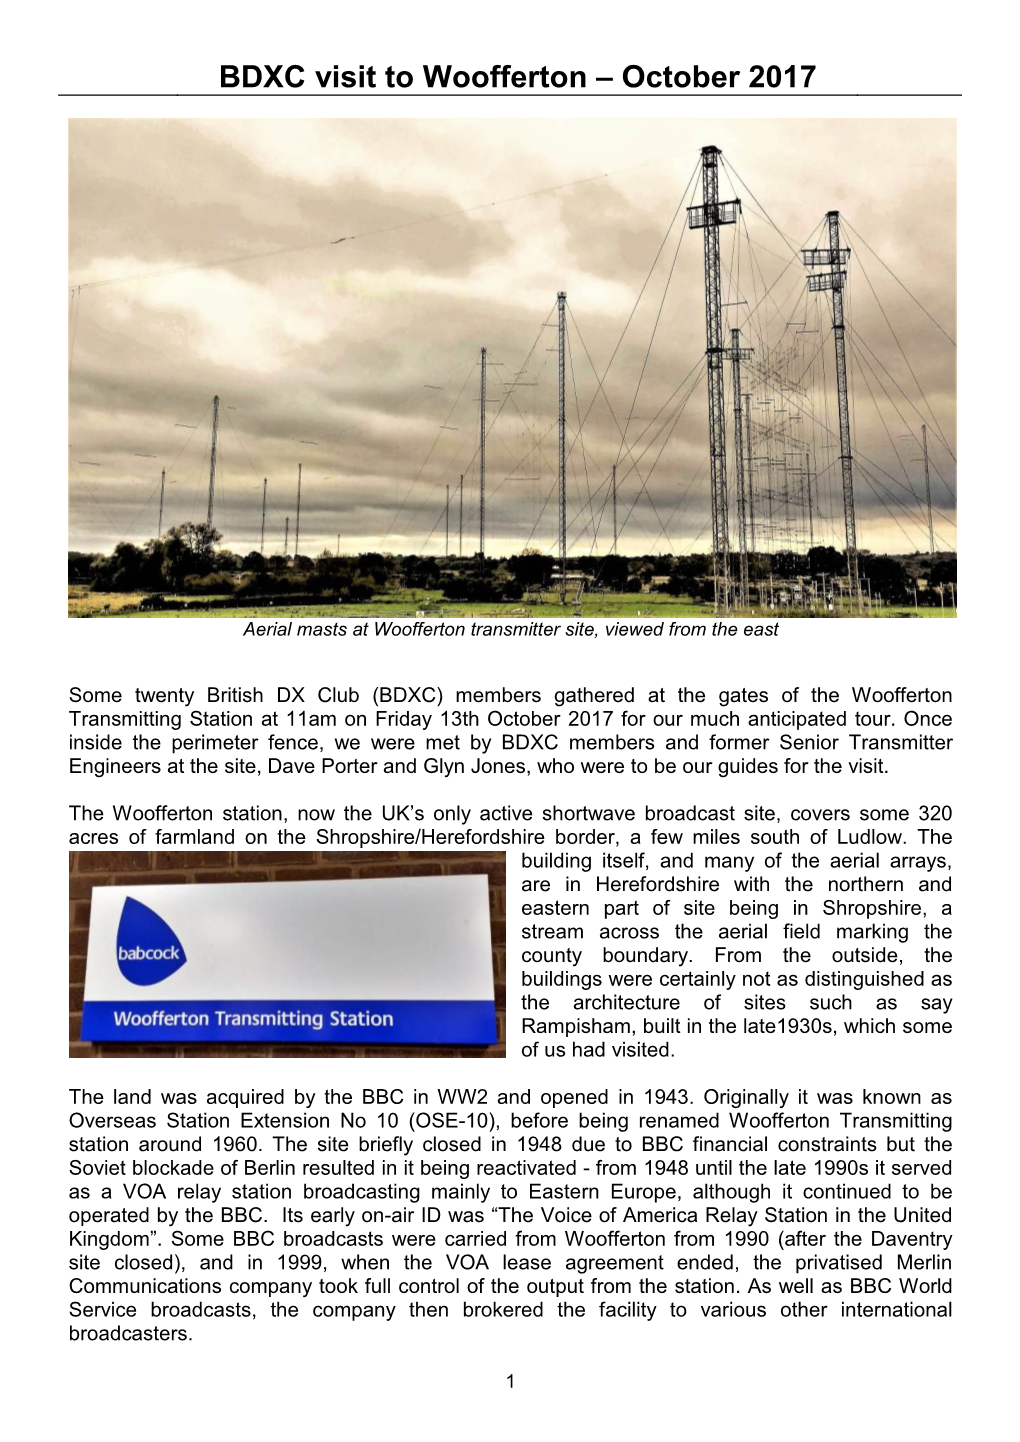 Visit to Woofferton Transmitter Site